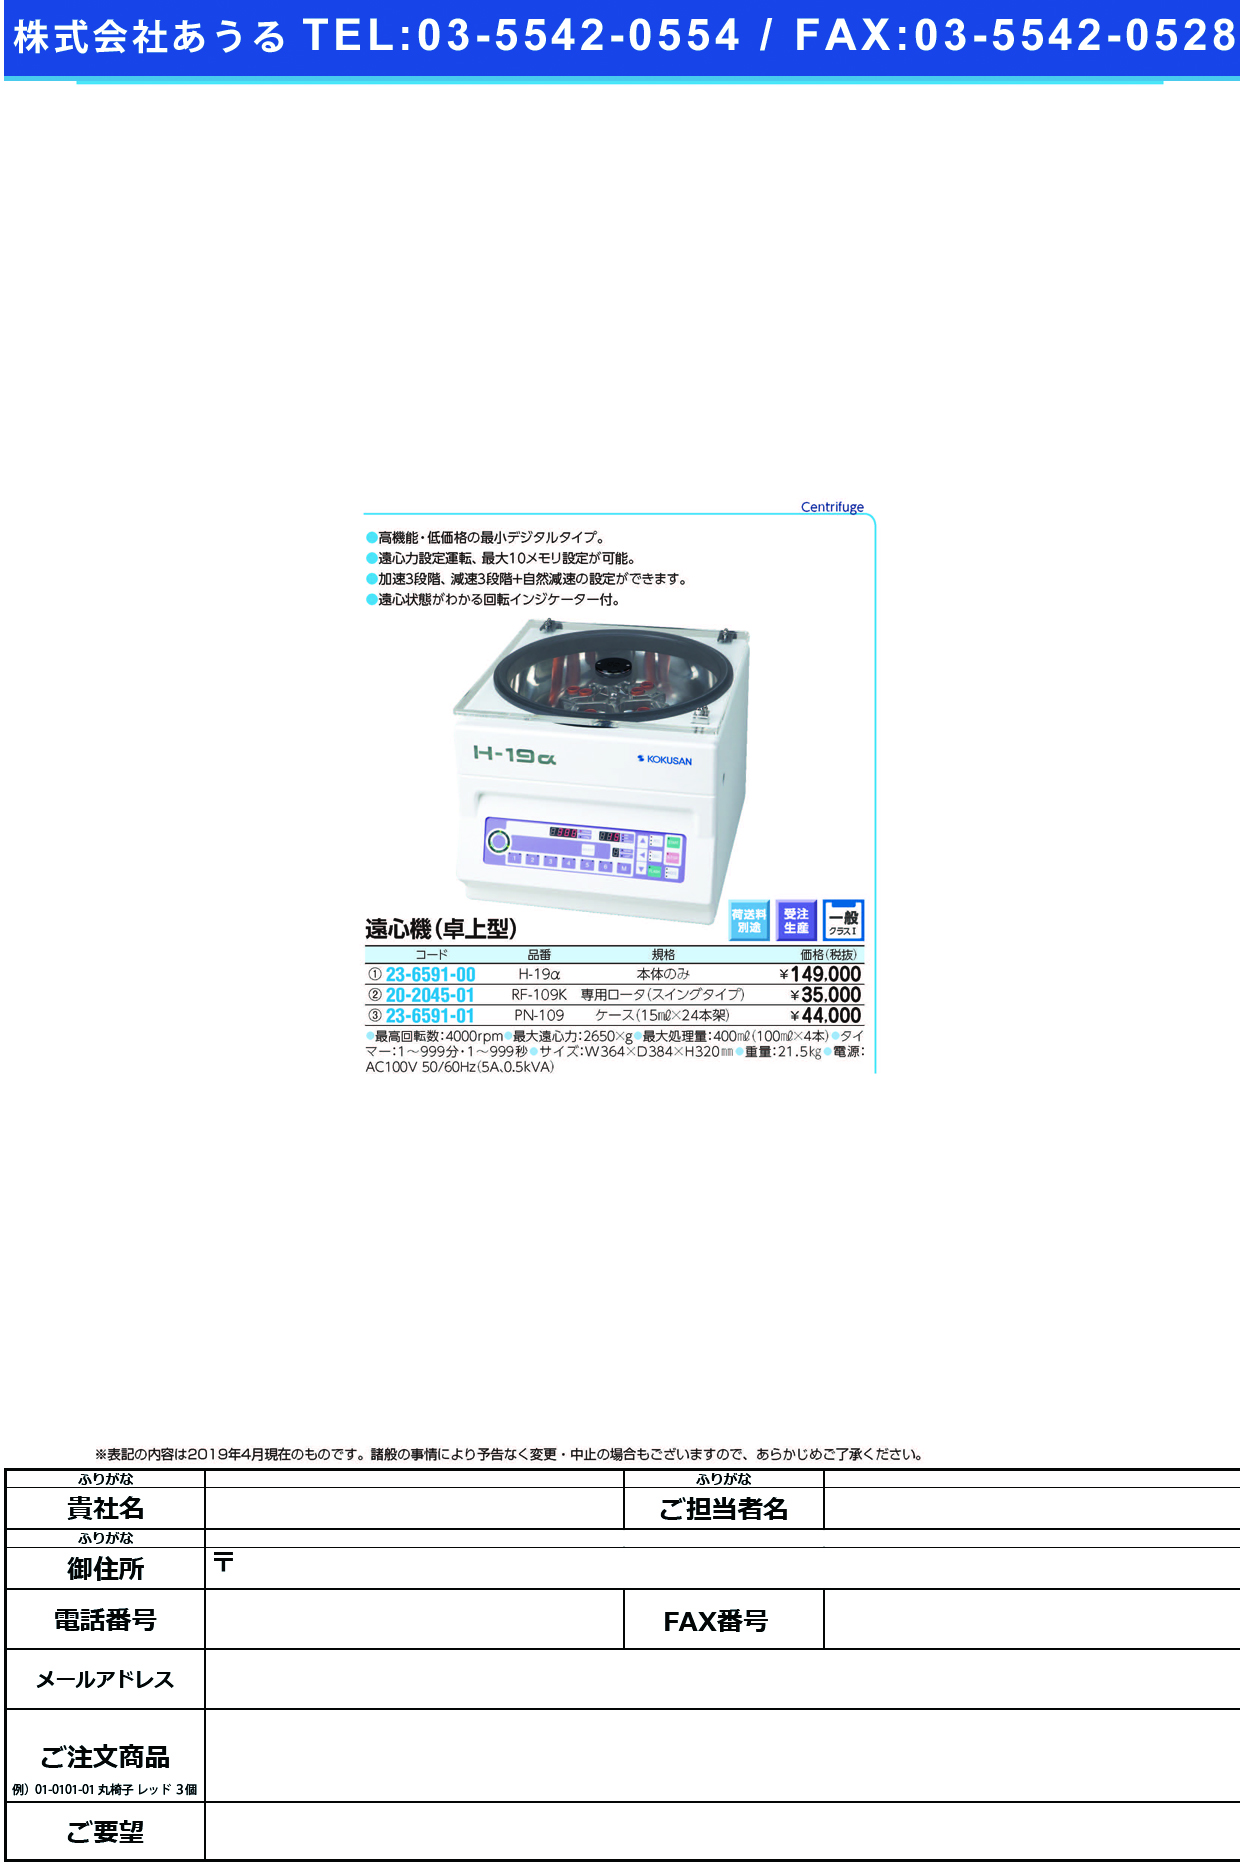 (23-6591-01)樹脂ケース PN-109 ｼﾞｭｼｹｰｽ【1組単位】【2019年カタログ商品】